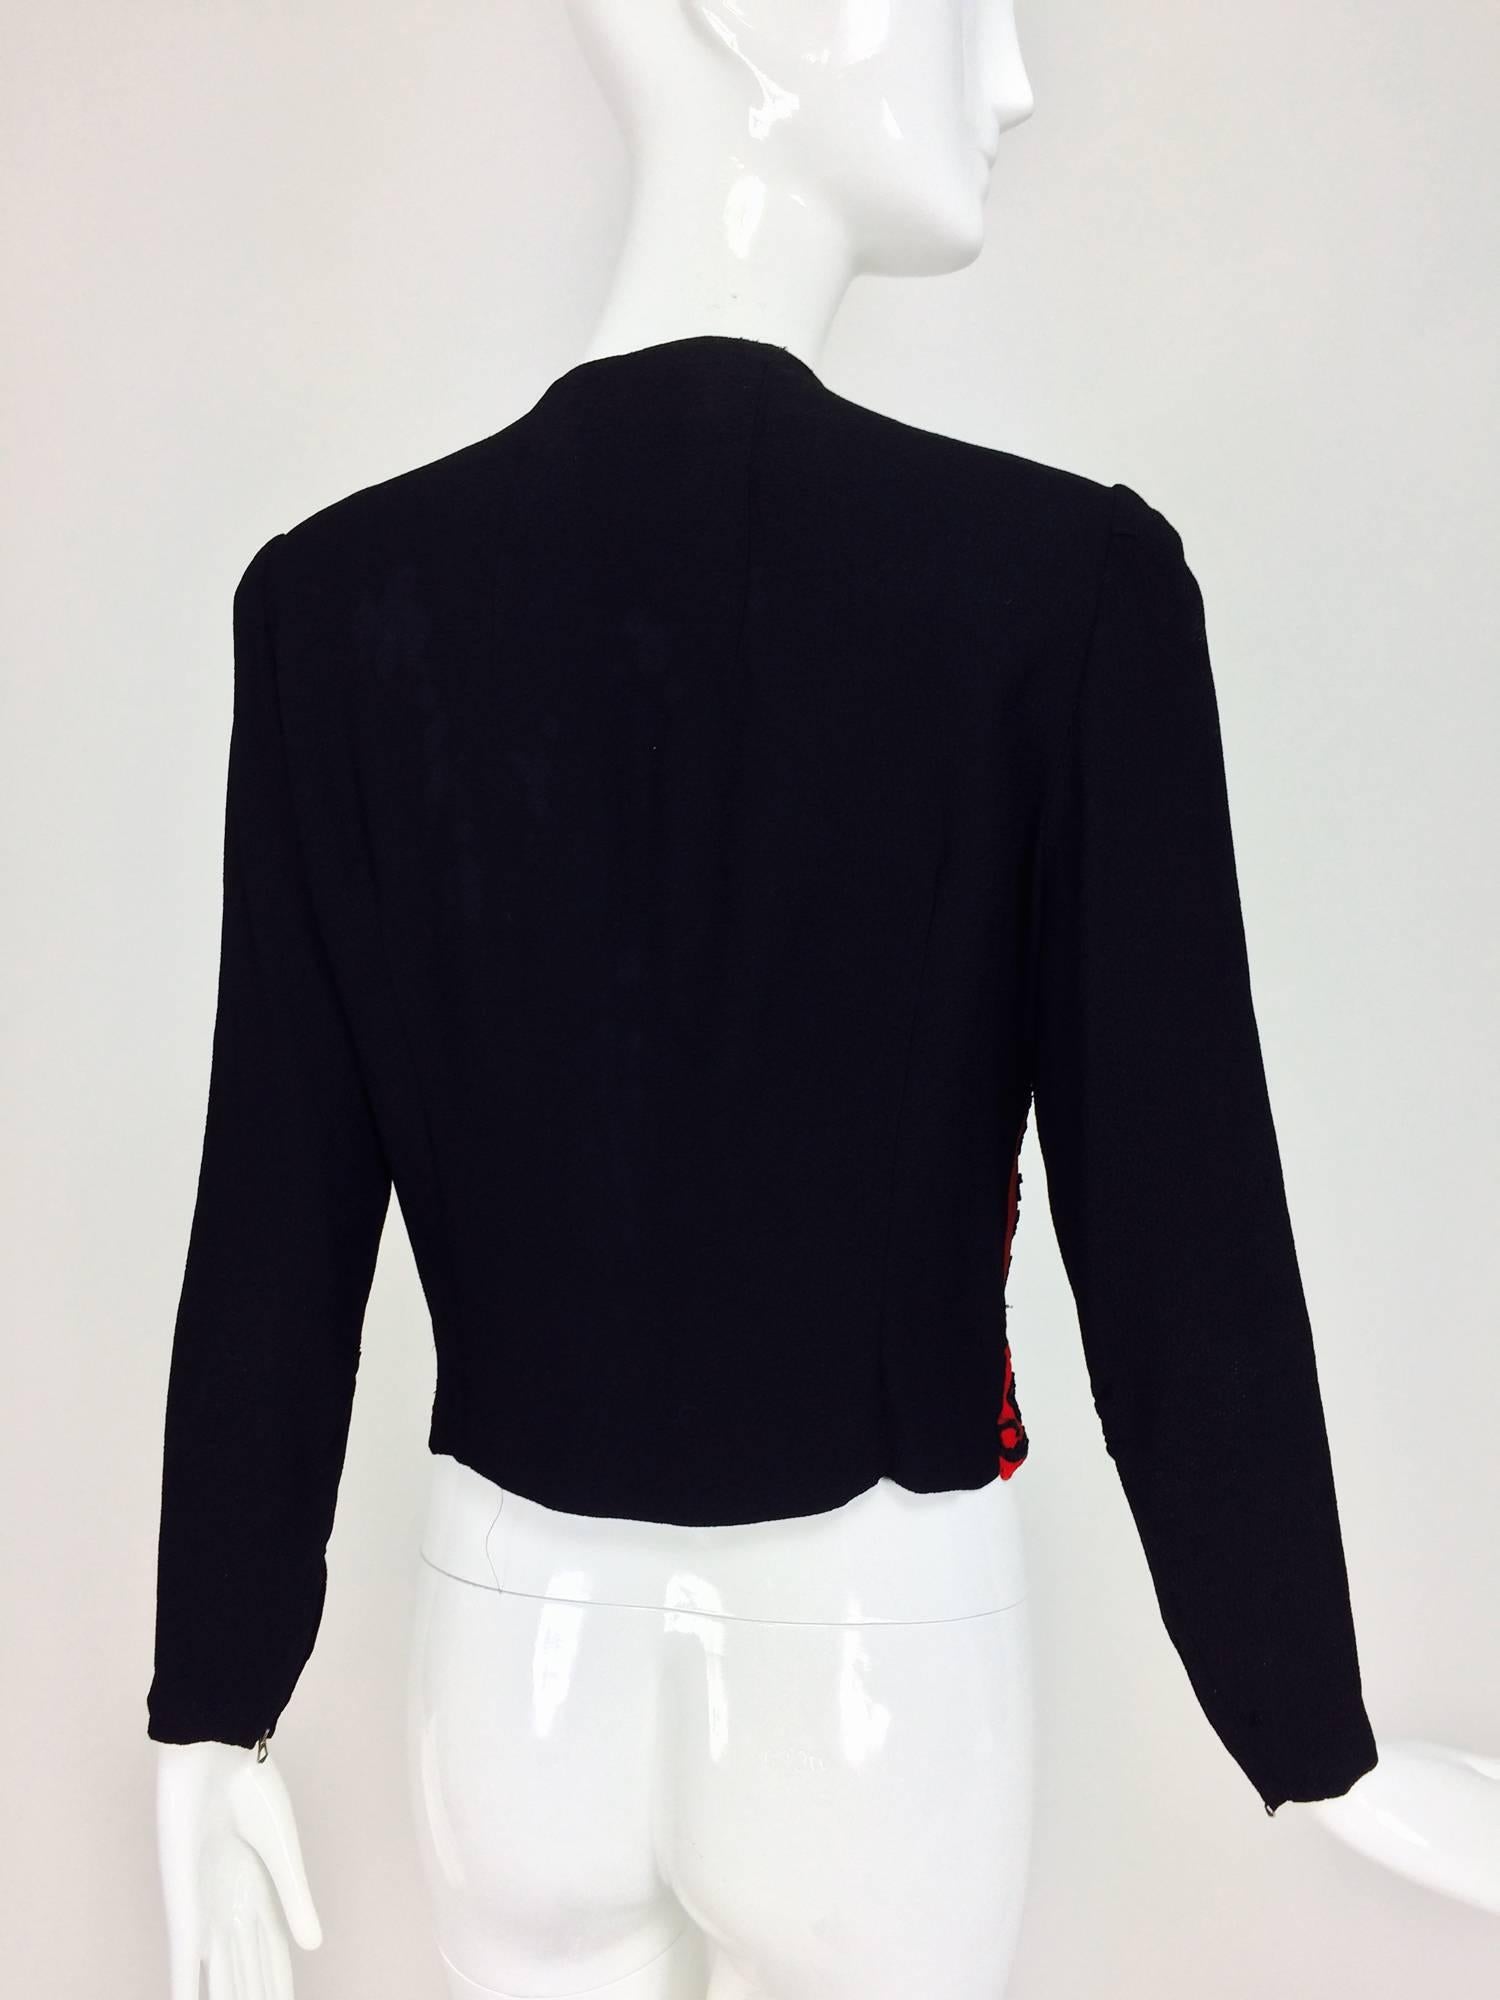 Passementerie beaded long sleeve jacket red & black crepe 1930s 1